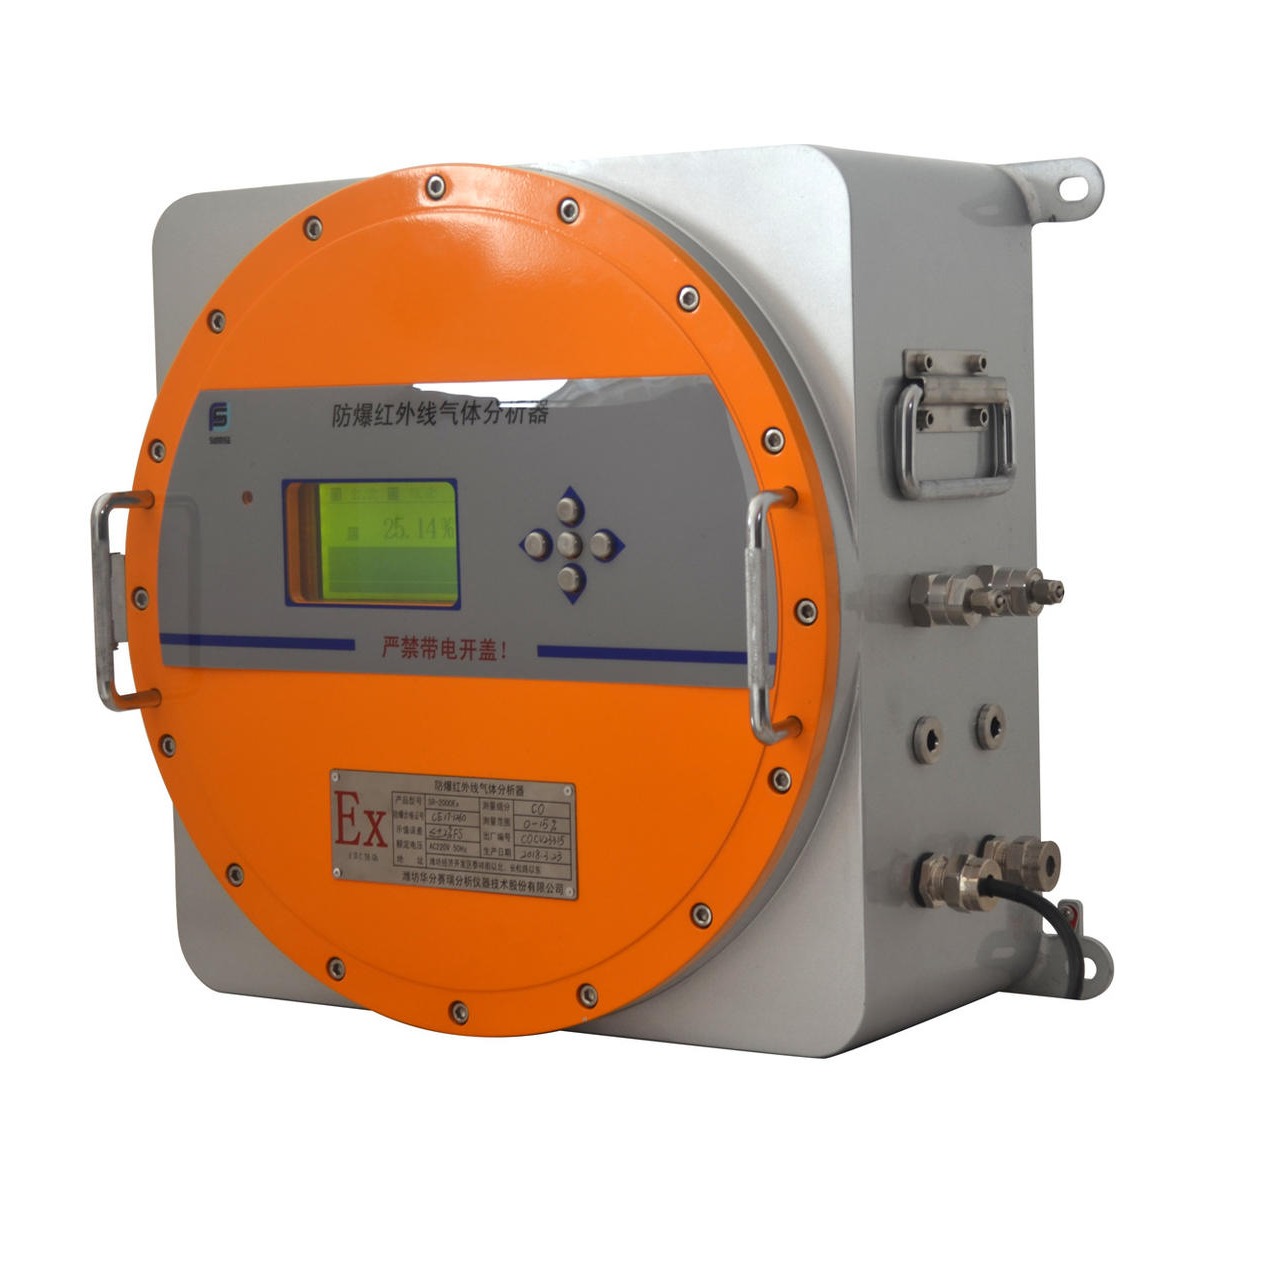 华分赛瑞SR-2000EX红外气体分析仪 实时在线监测CO、CO2、CH4工业气体  防爆气体分析仪德国进口技术